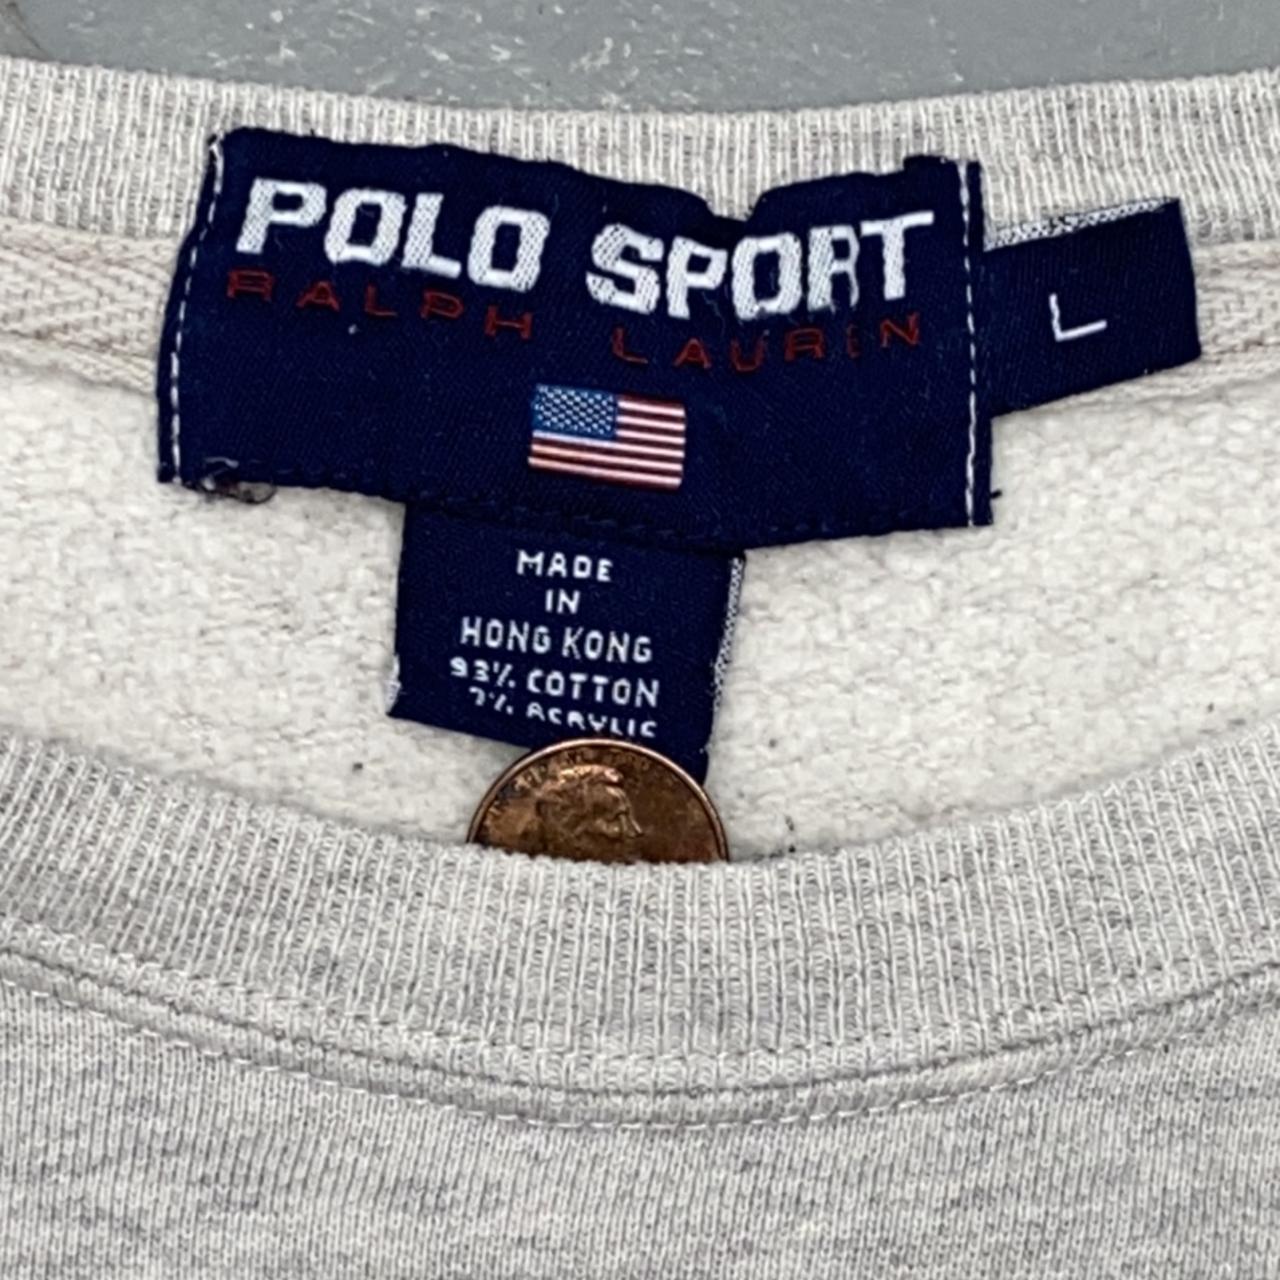 Ralph Lauren #PoloSport sweatpants New with - Depop